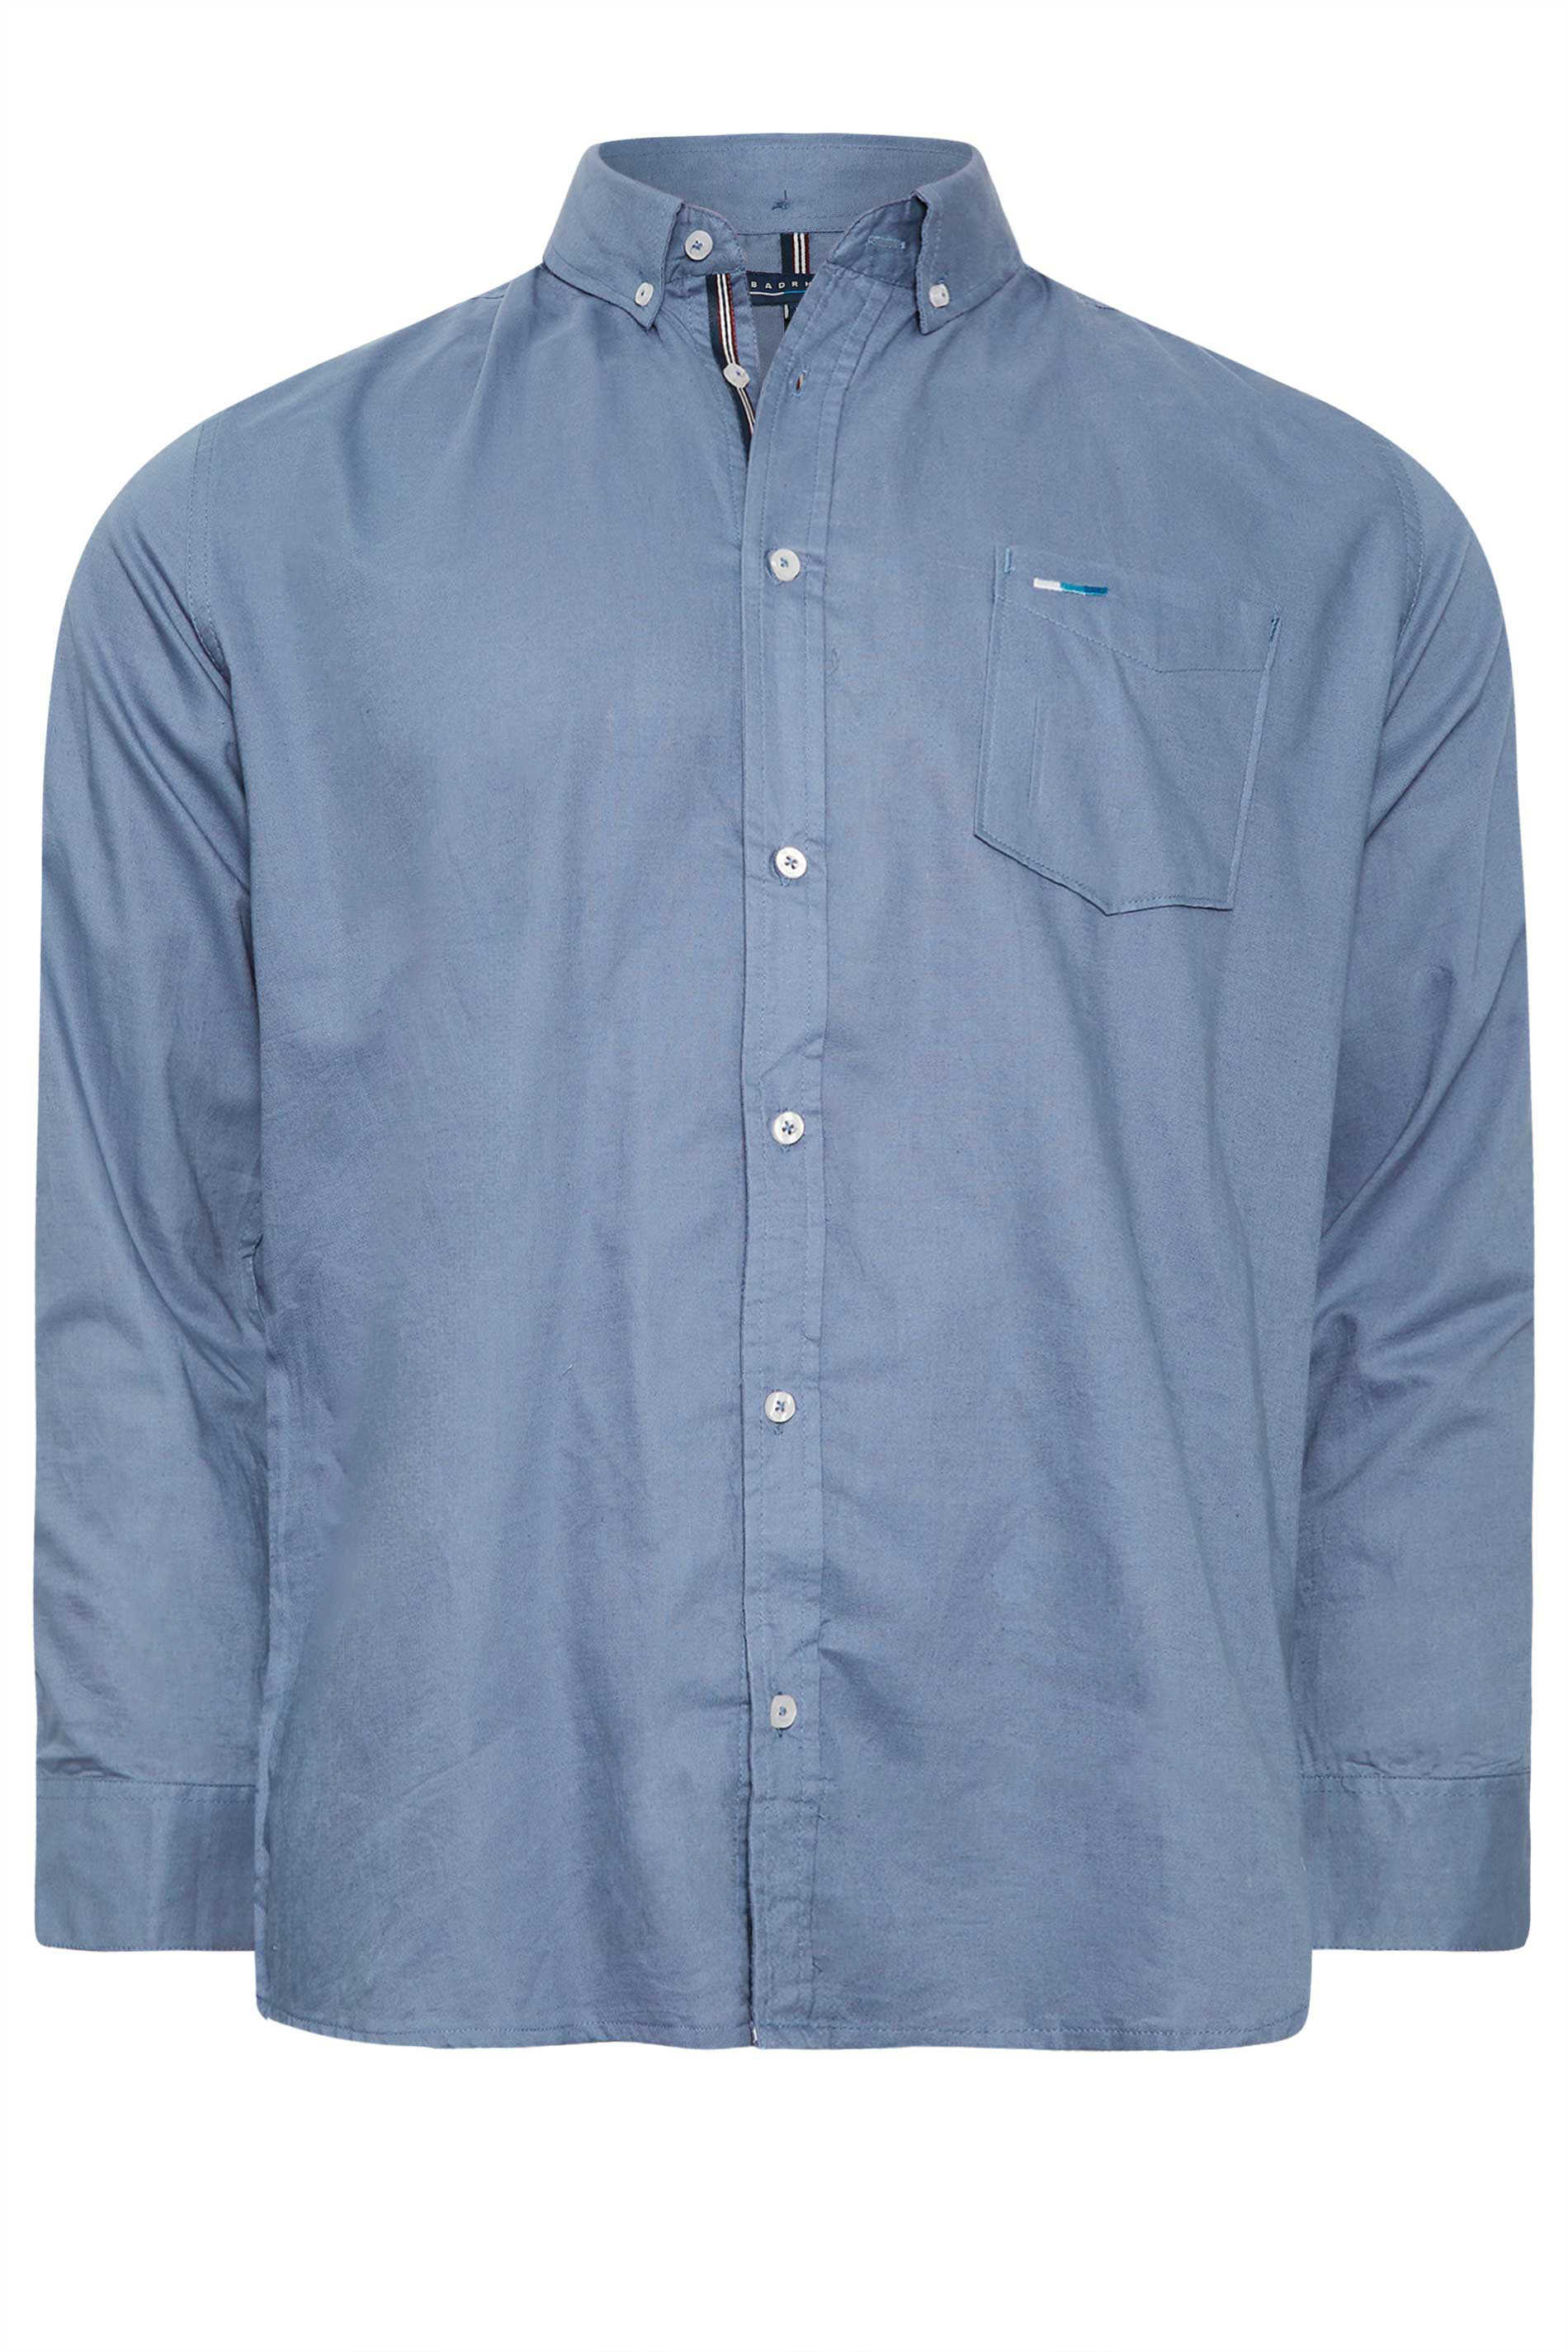 BadRhino Blue Essential Long Sleeve Oxford Shirt | BadRhino 2